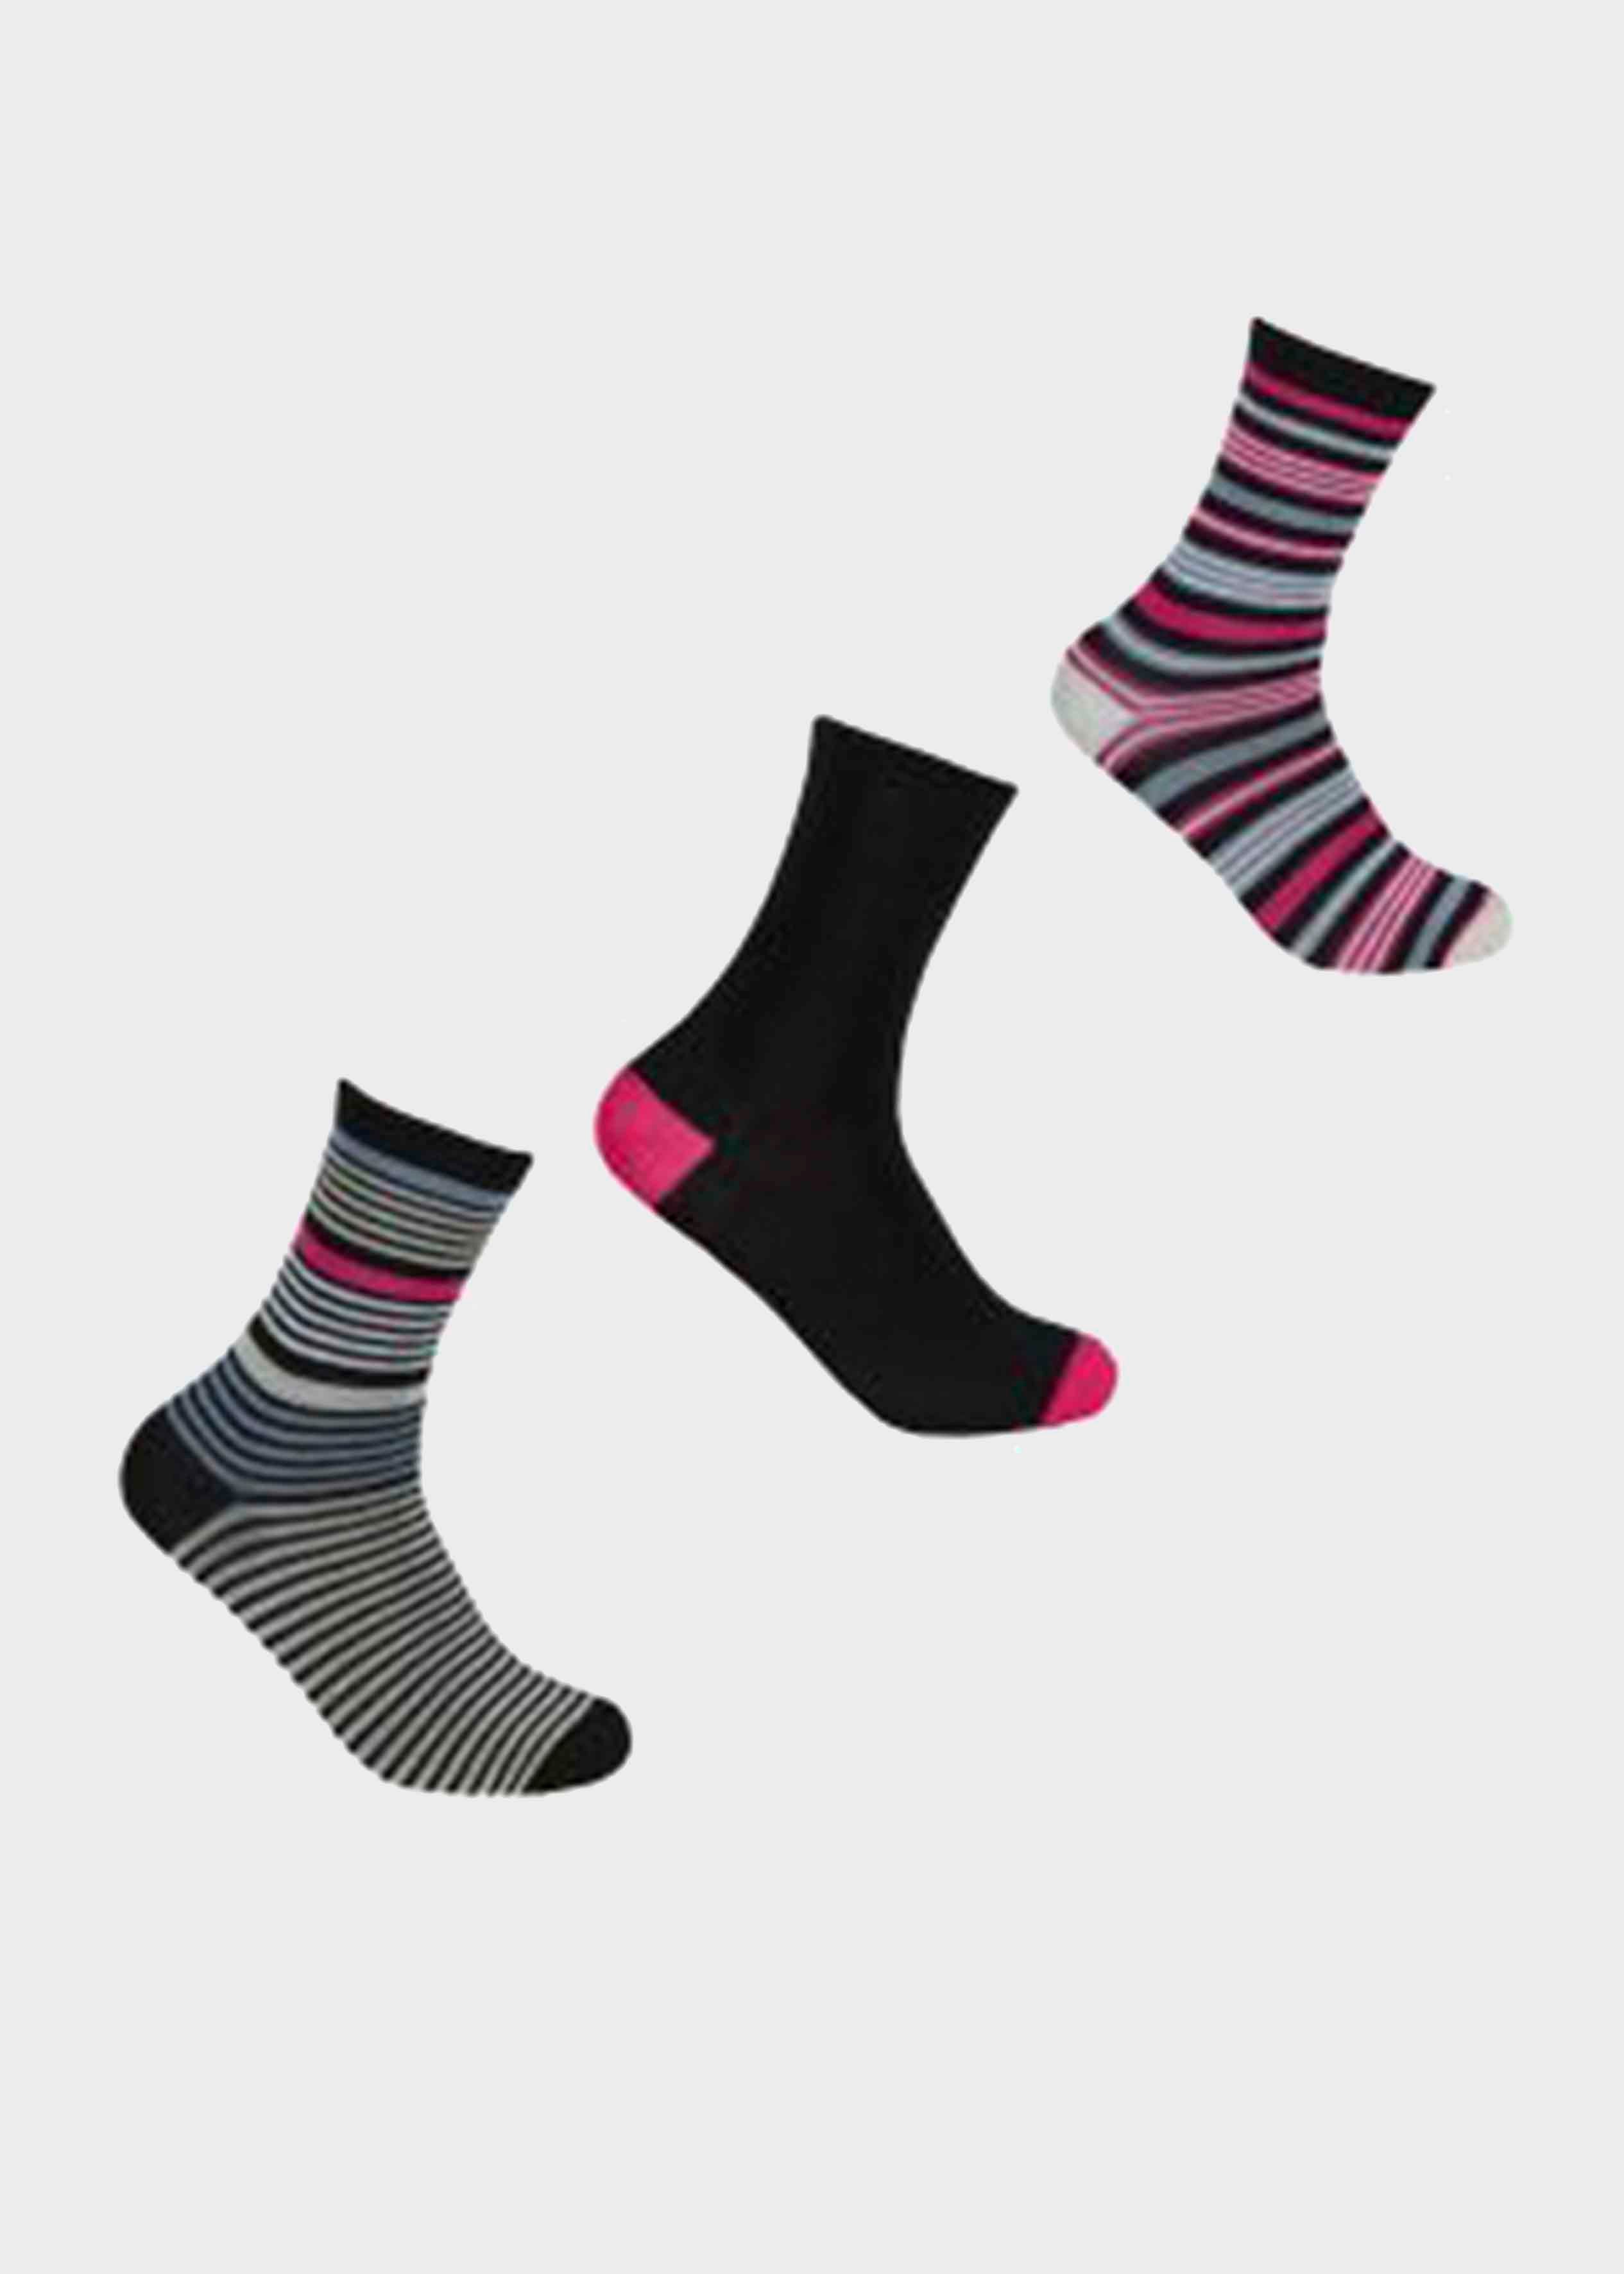 Sock Shop Gentle Grip Diabetic Non Elastic Socks Ladies 3 Pairs